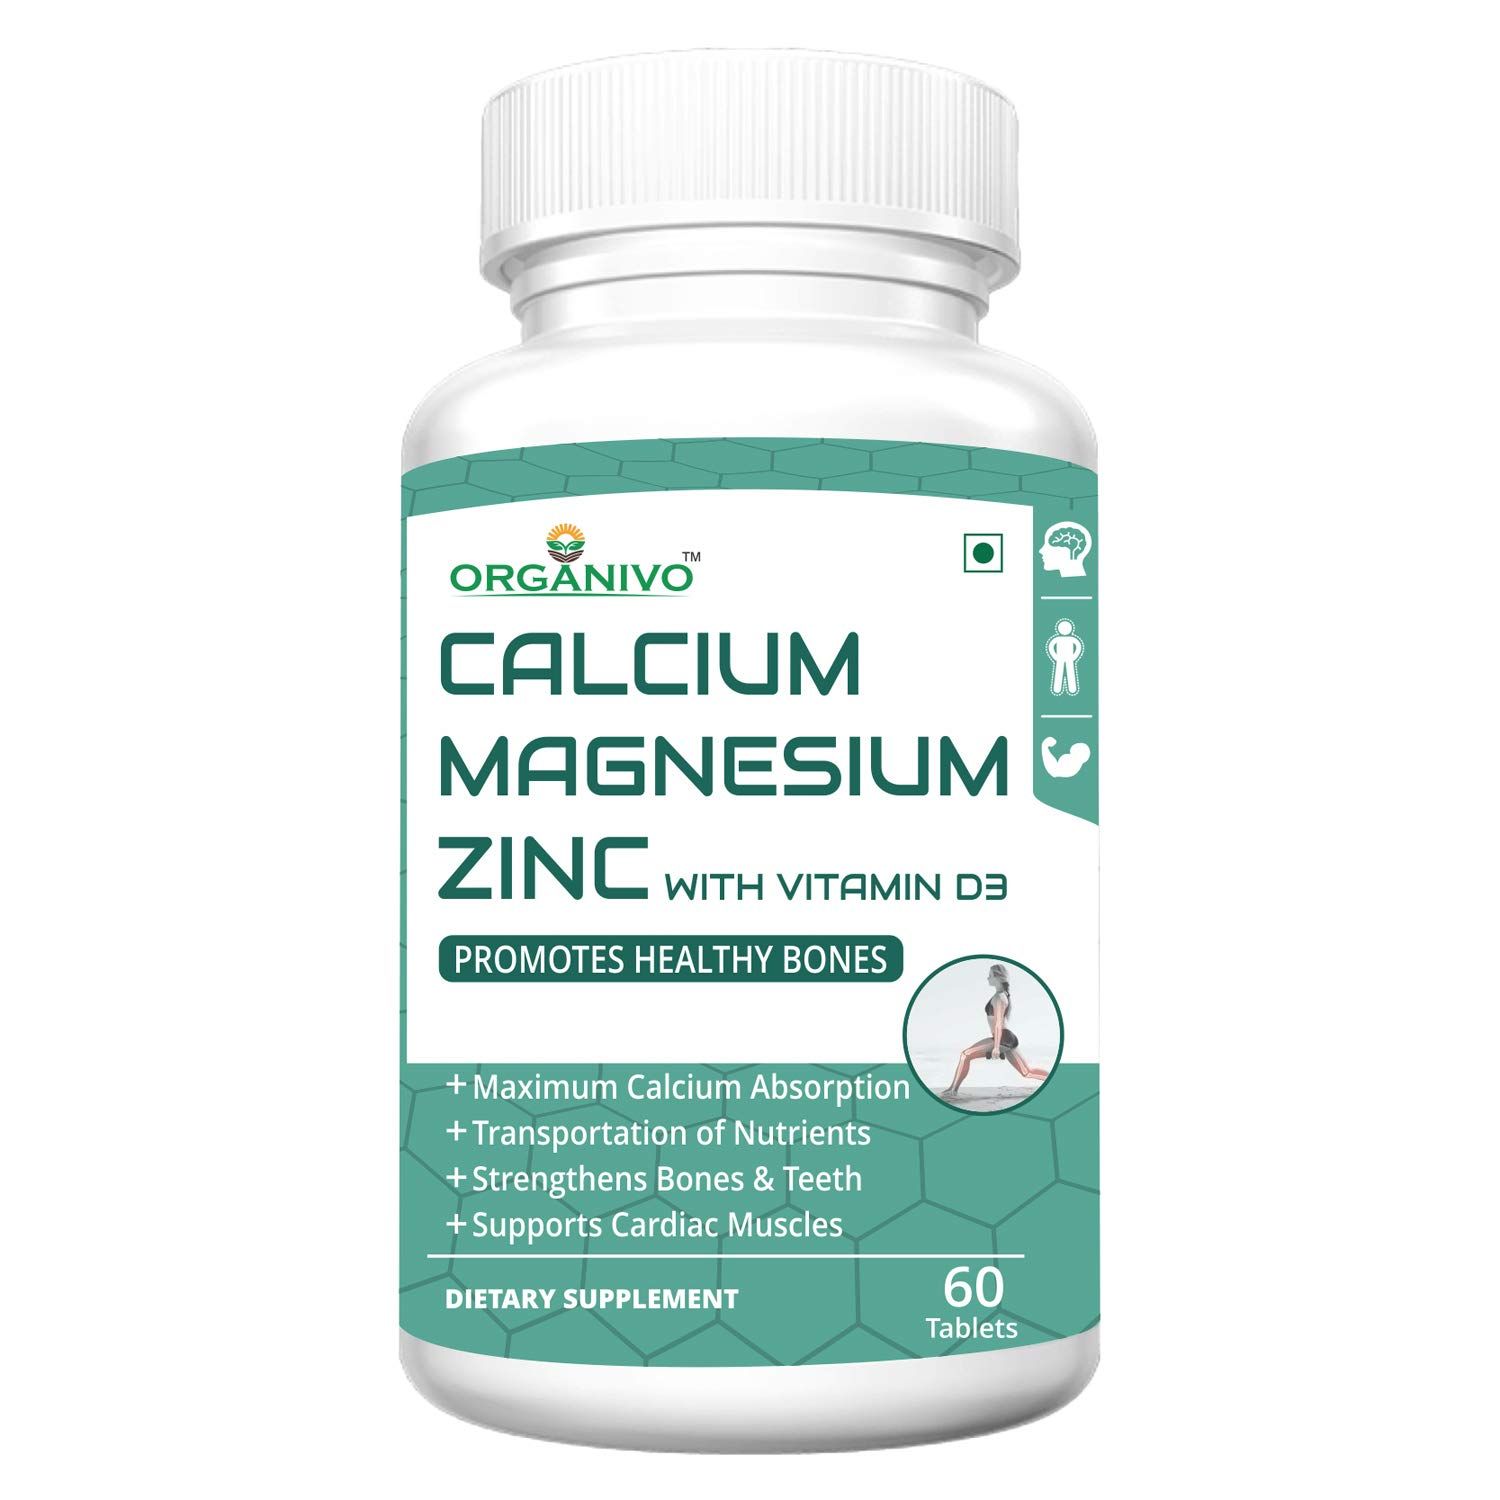 Organivo Calcium Magnesium Zinc With Vitamin D3 Image